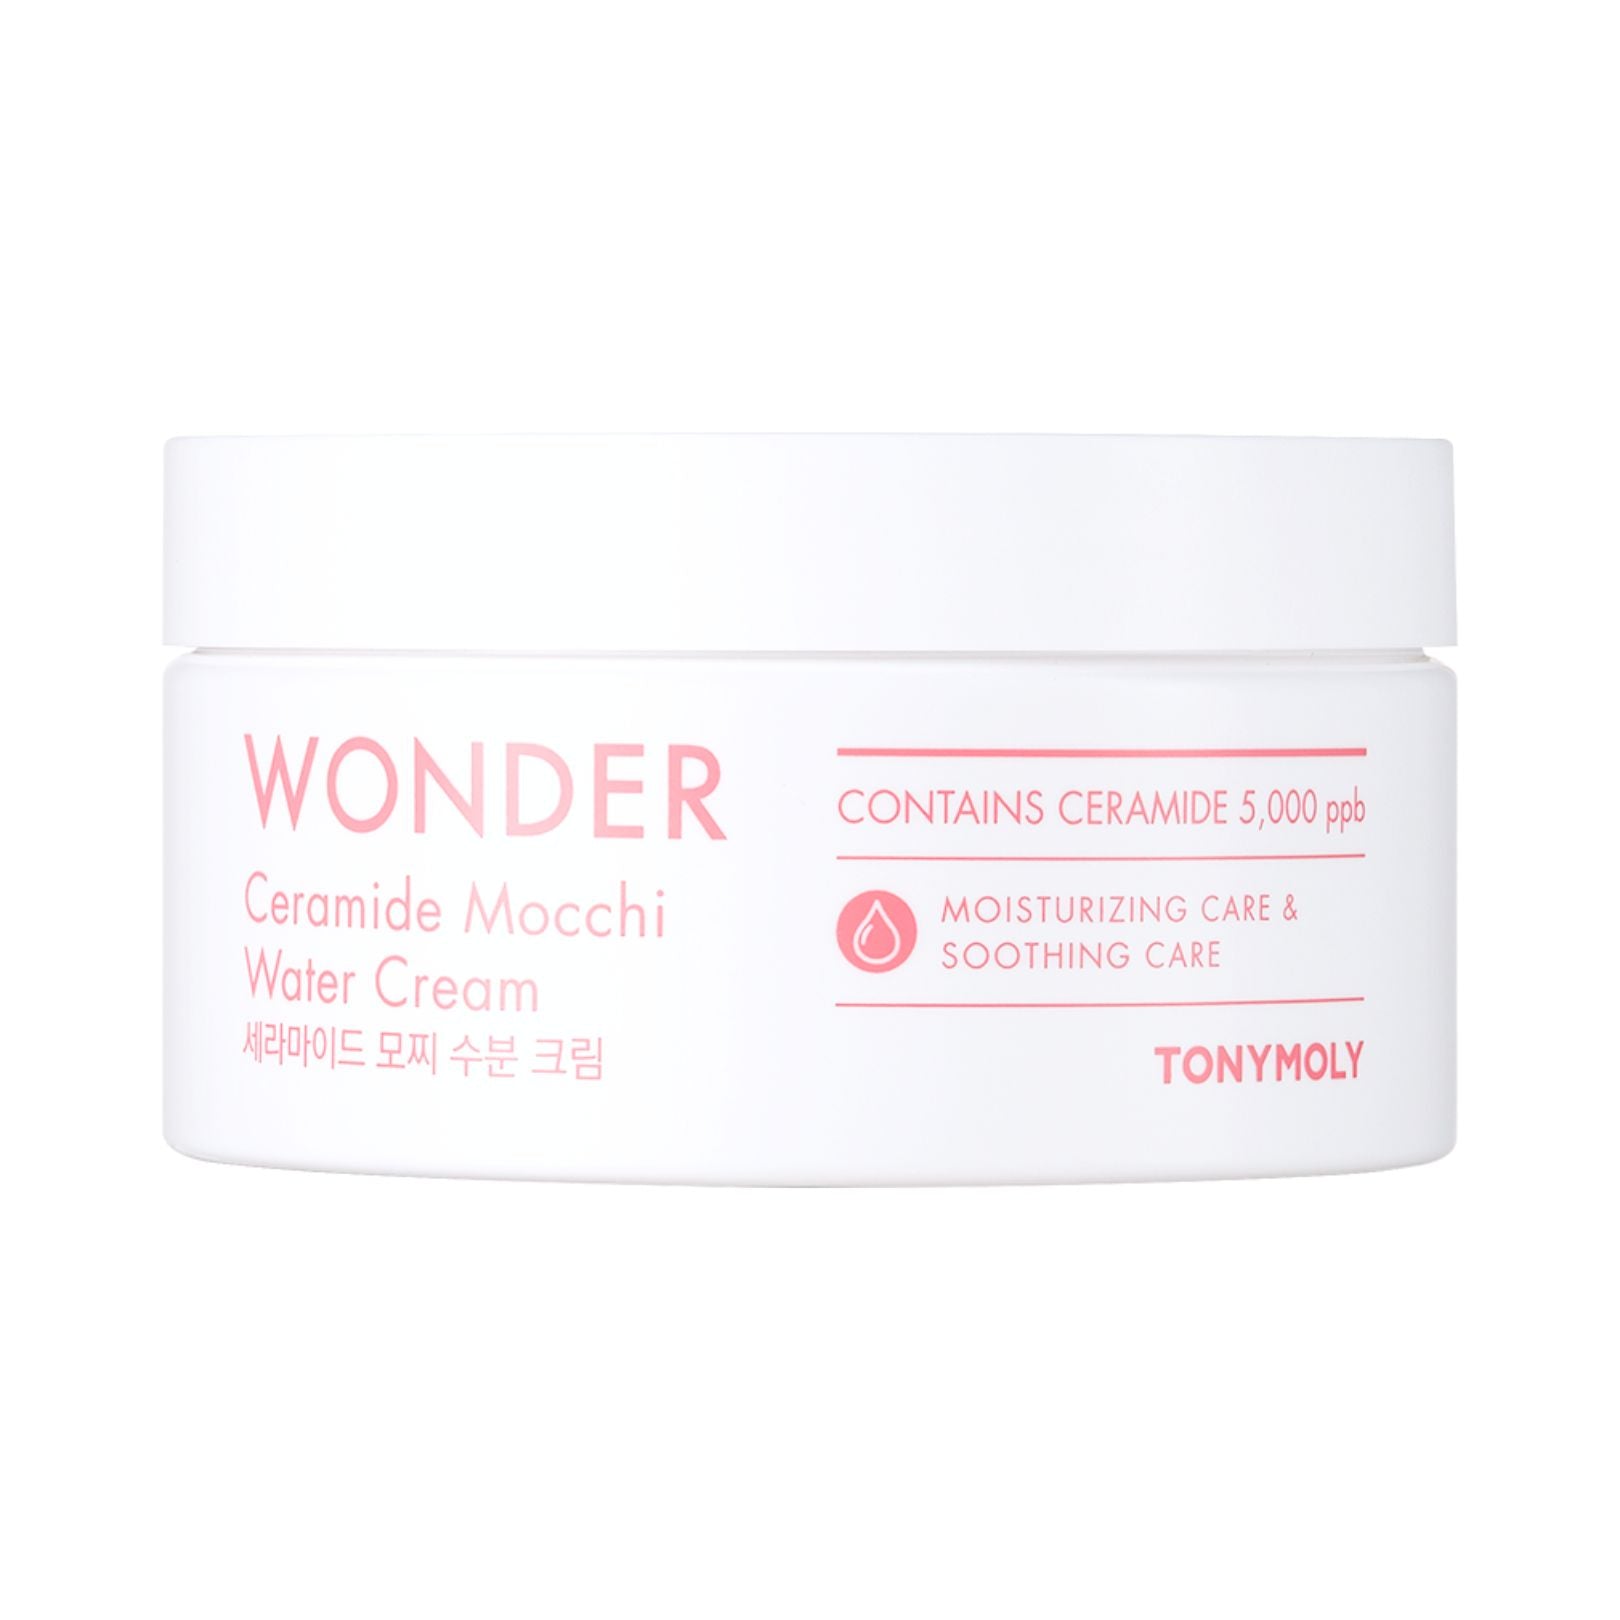 Wonder Ceramide Mochi Water Cream